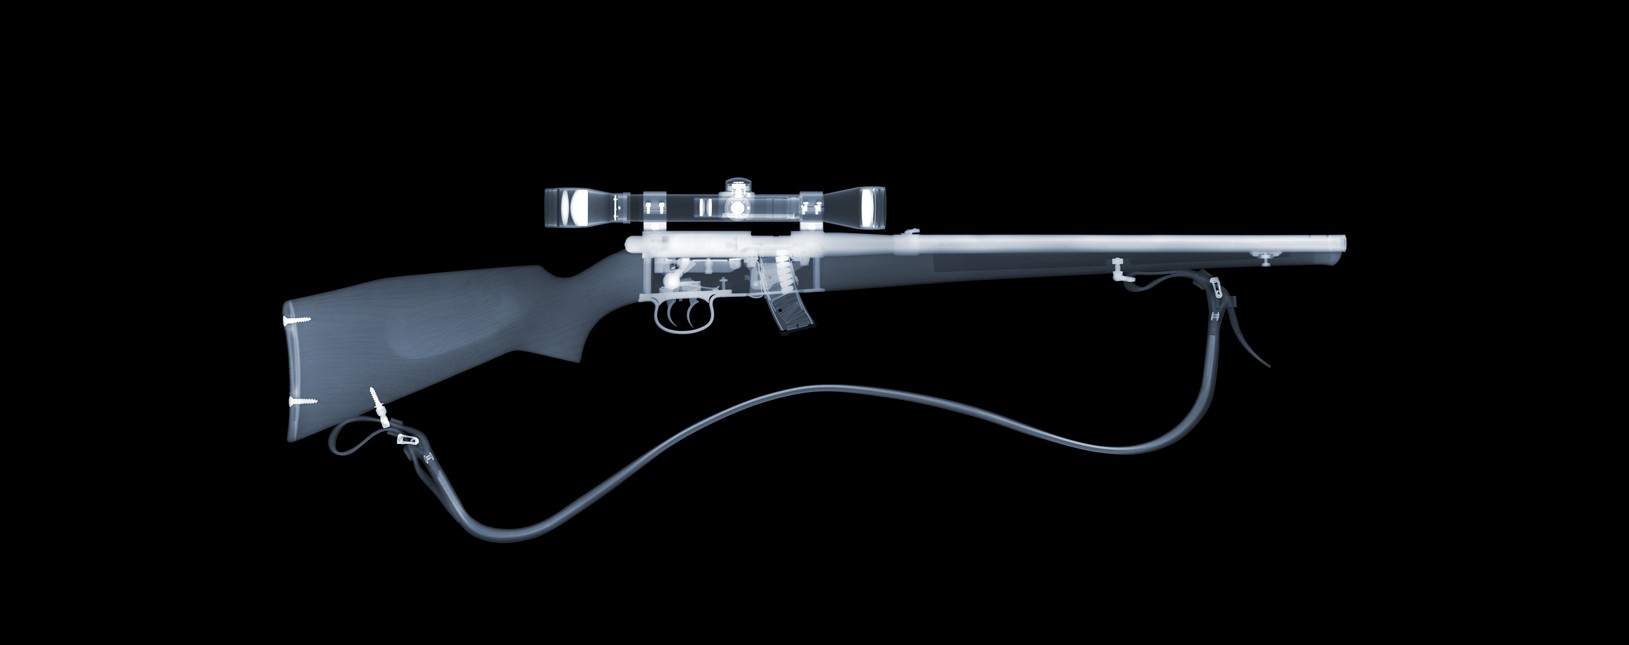 Anschutz rifle